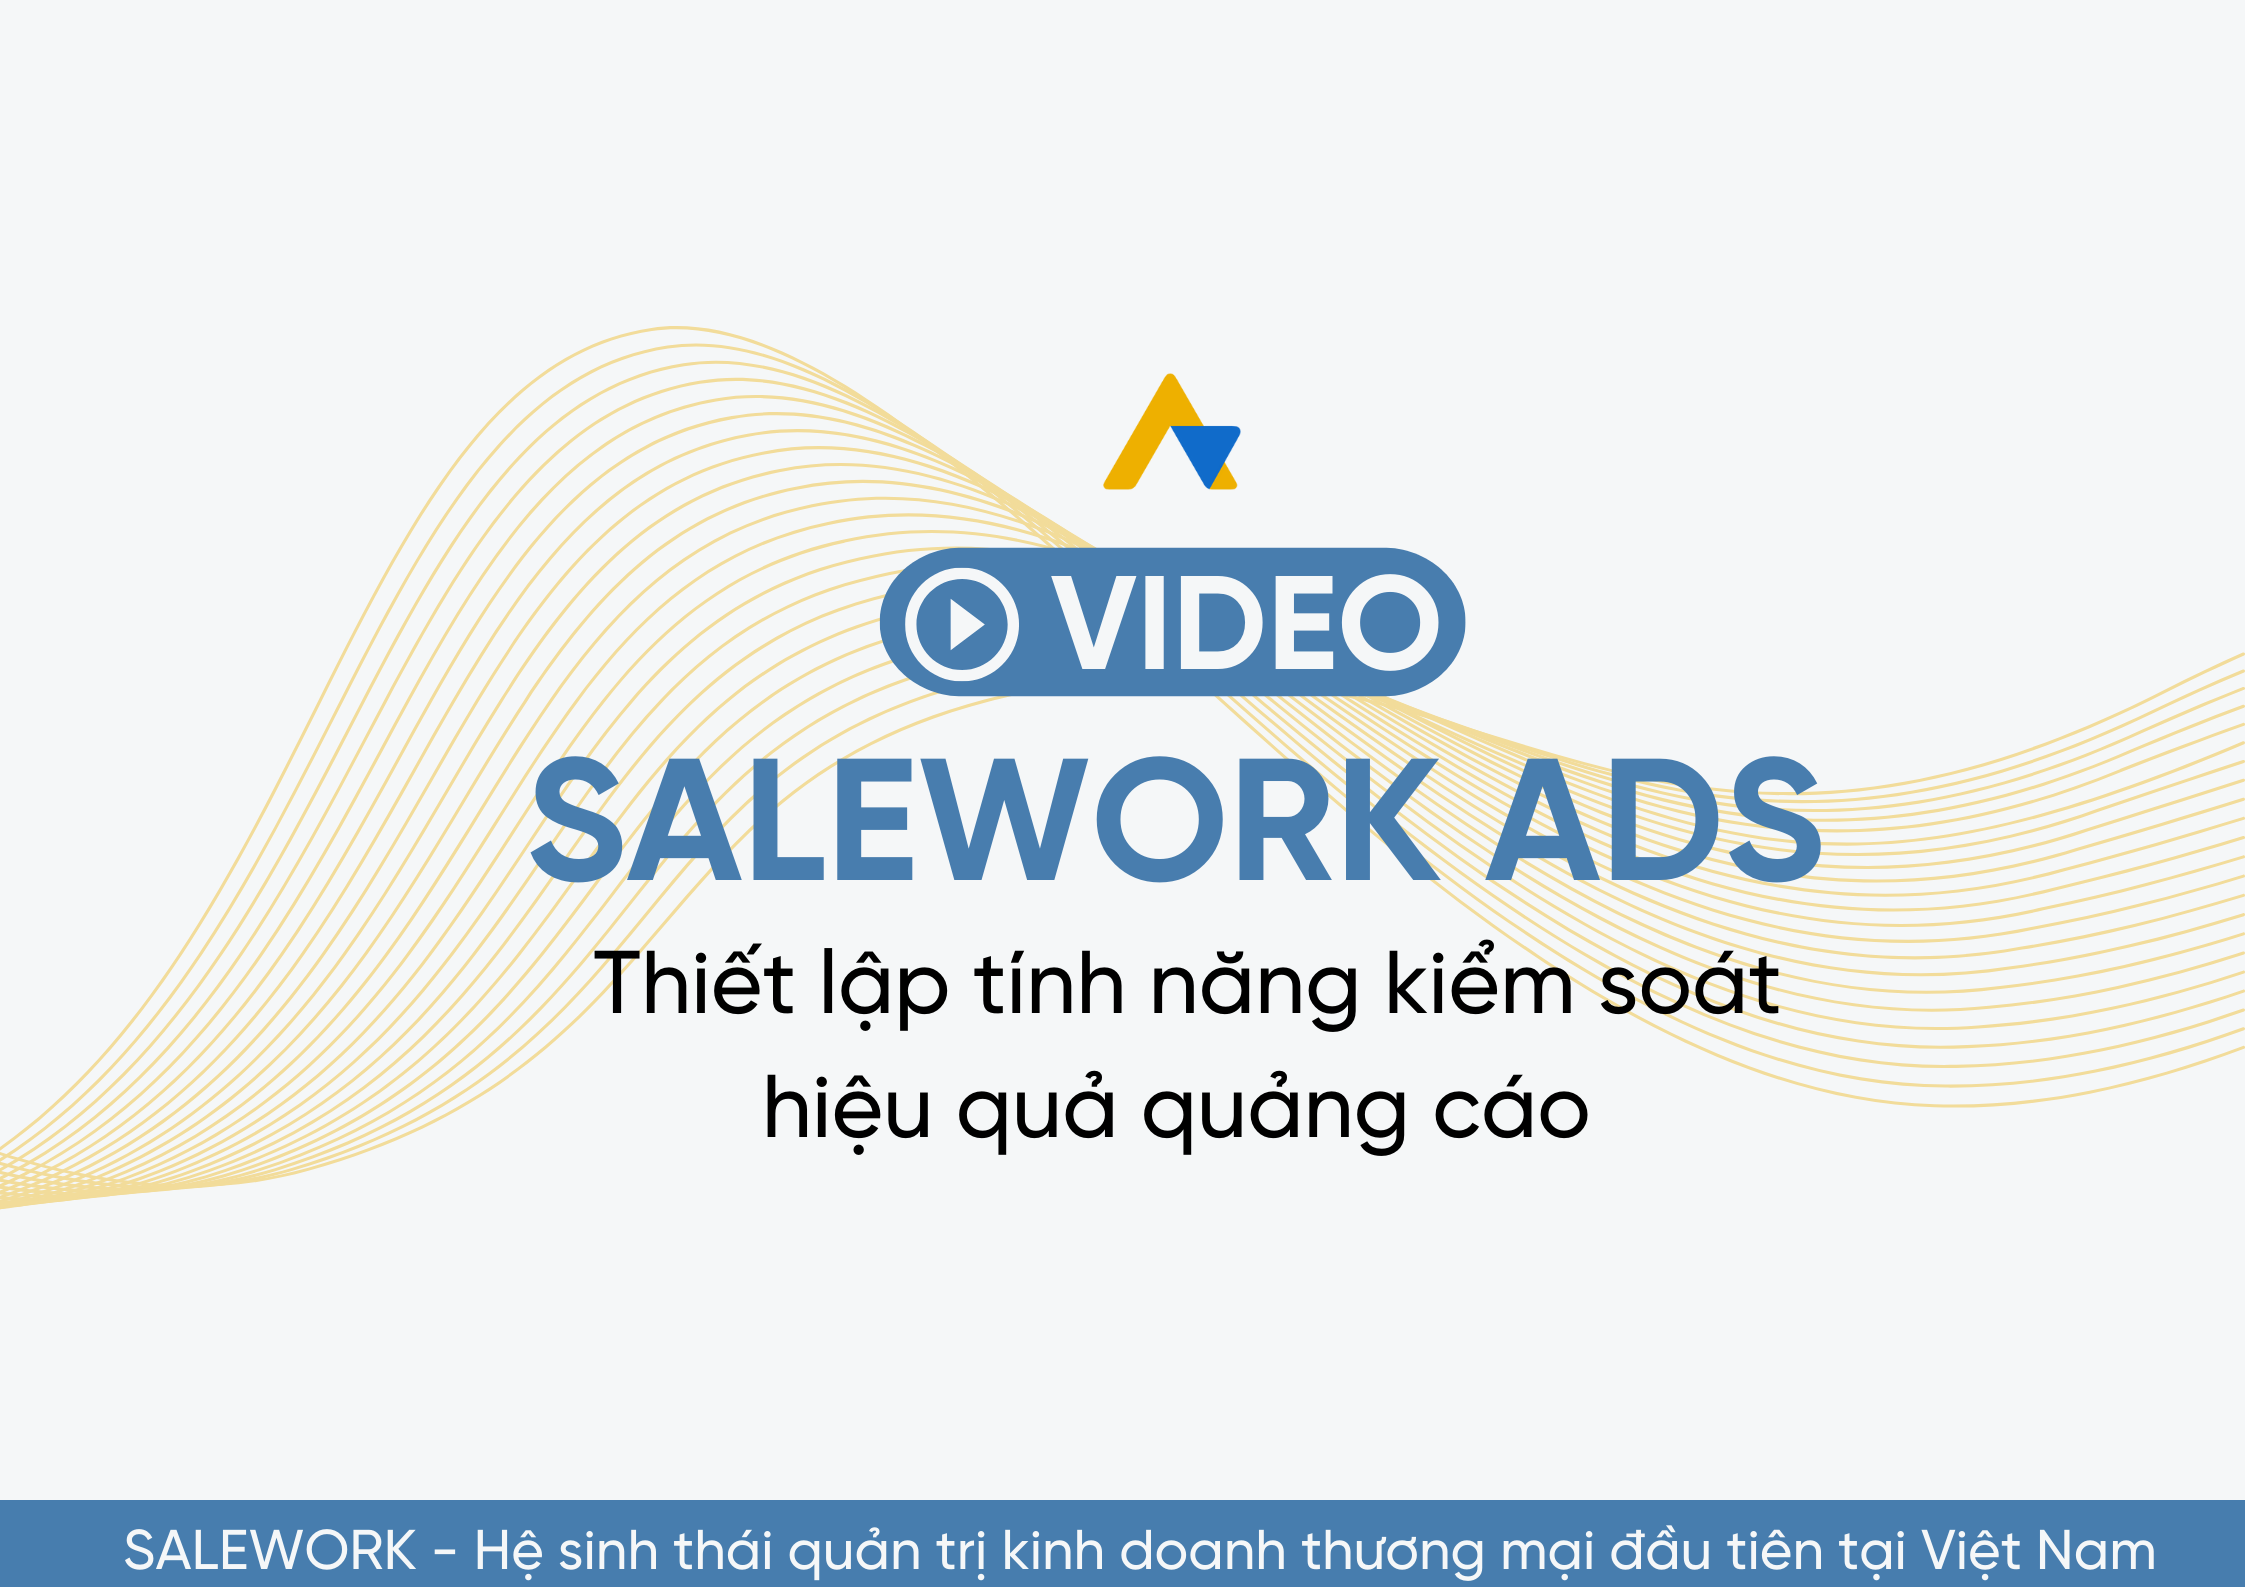 [VIDEO] Thiết lập tính năng kiểm soát hiệu quả quảng cáo tại Salework Ads - 17